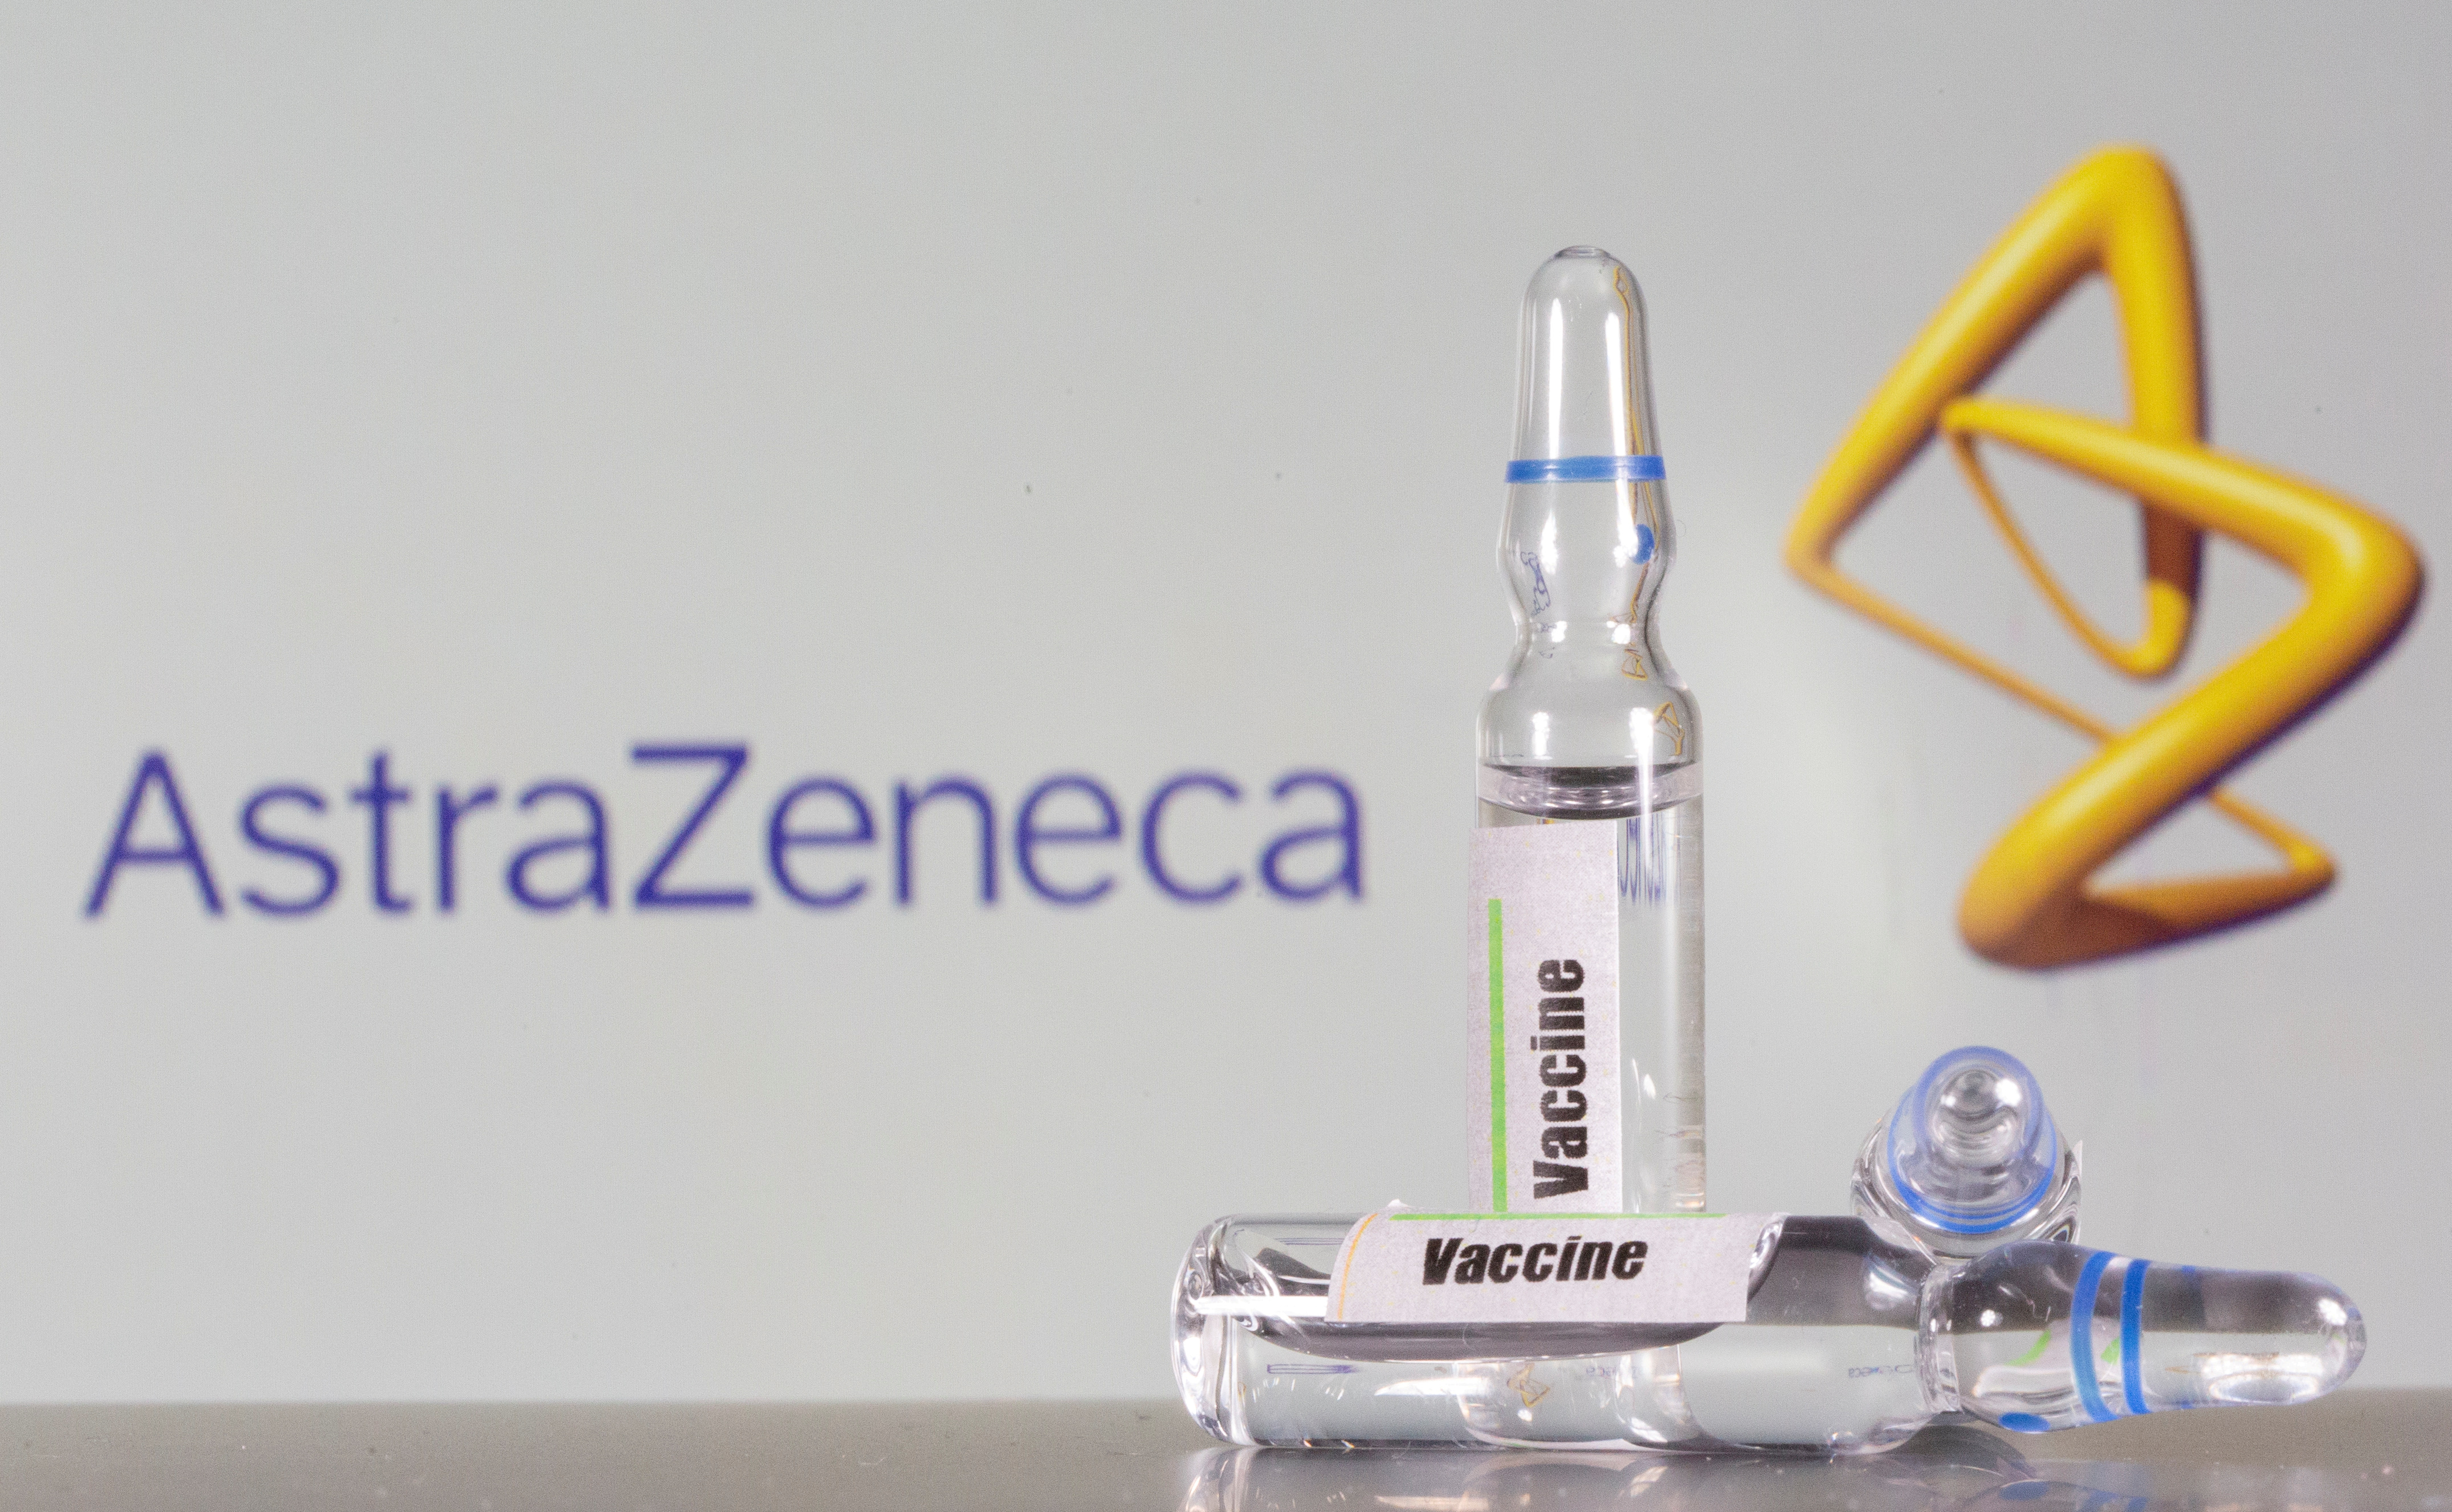 Los problemas con AstraZeneca retrasan aún más la vacunación en Países Bajos